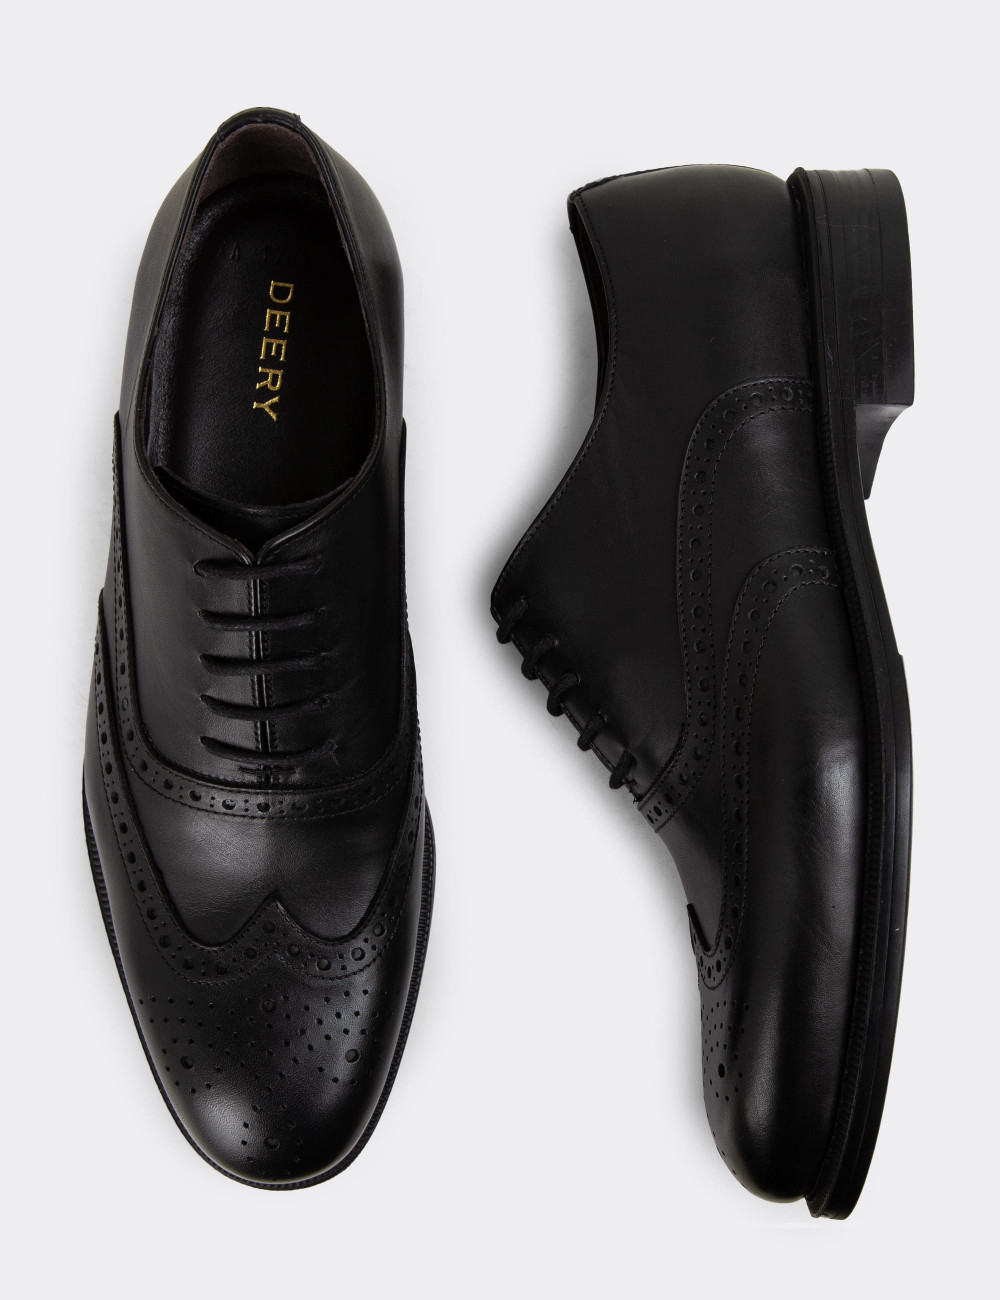 Hakiki Deri Siyah Erkek Klasik Ayakkabı - 01785MSYHC01